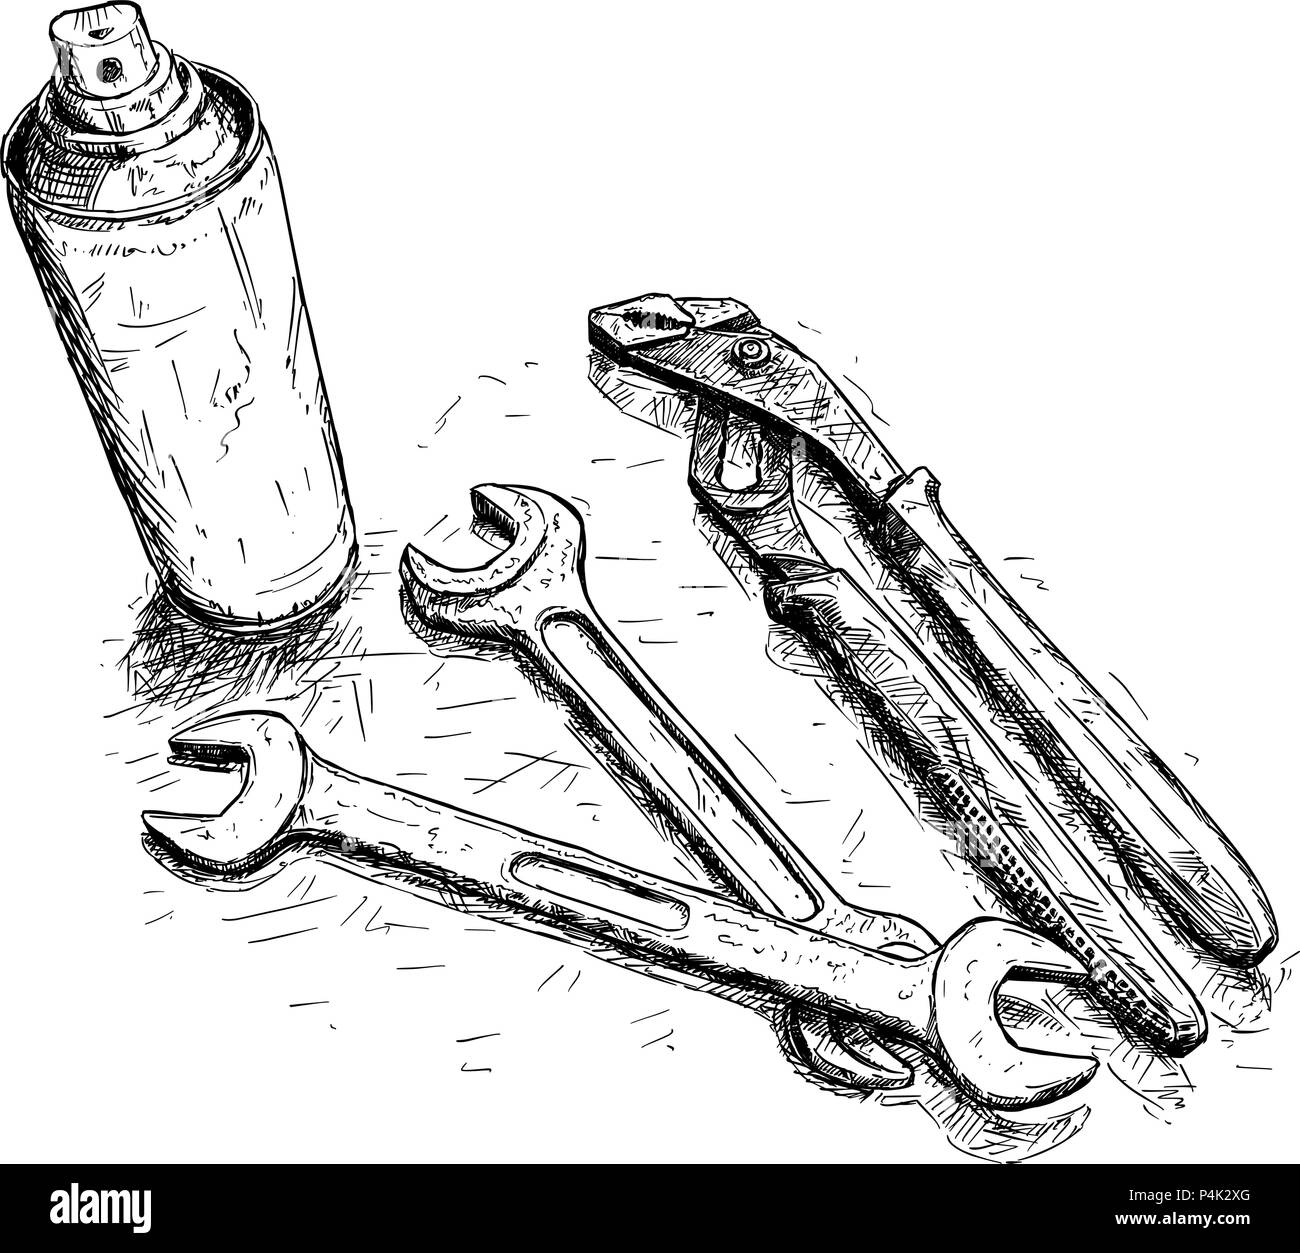 Vektor Künstlerische Zeichnung Abbildung: Satz von Tools Stock Vektor